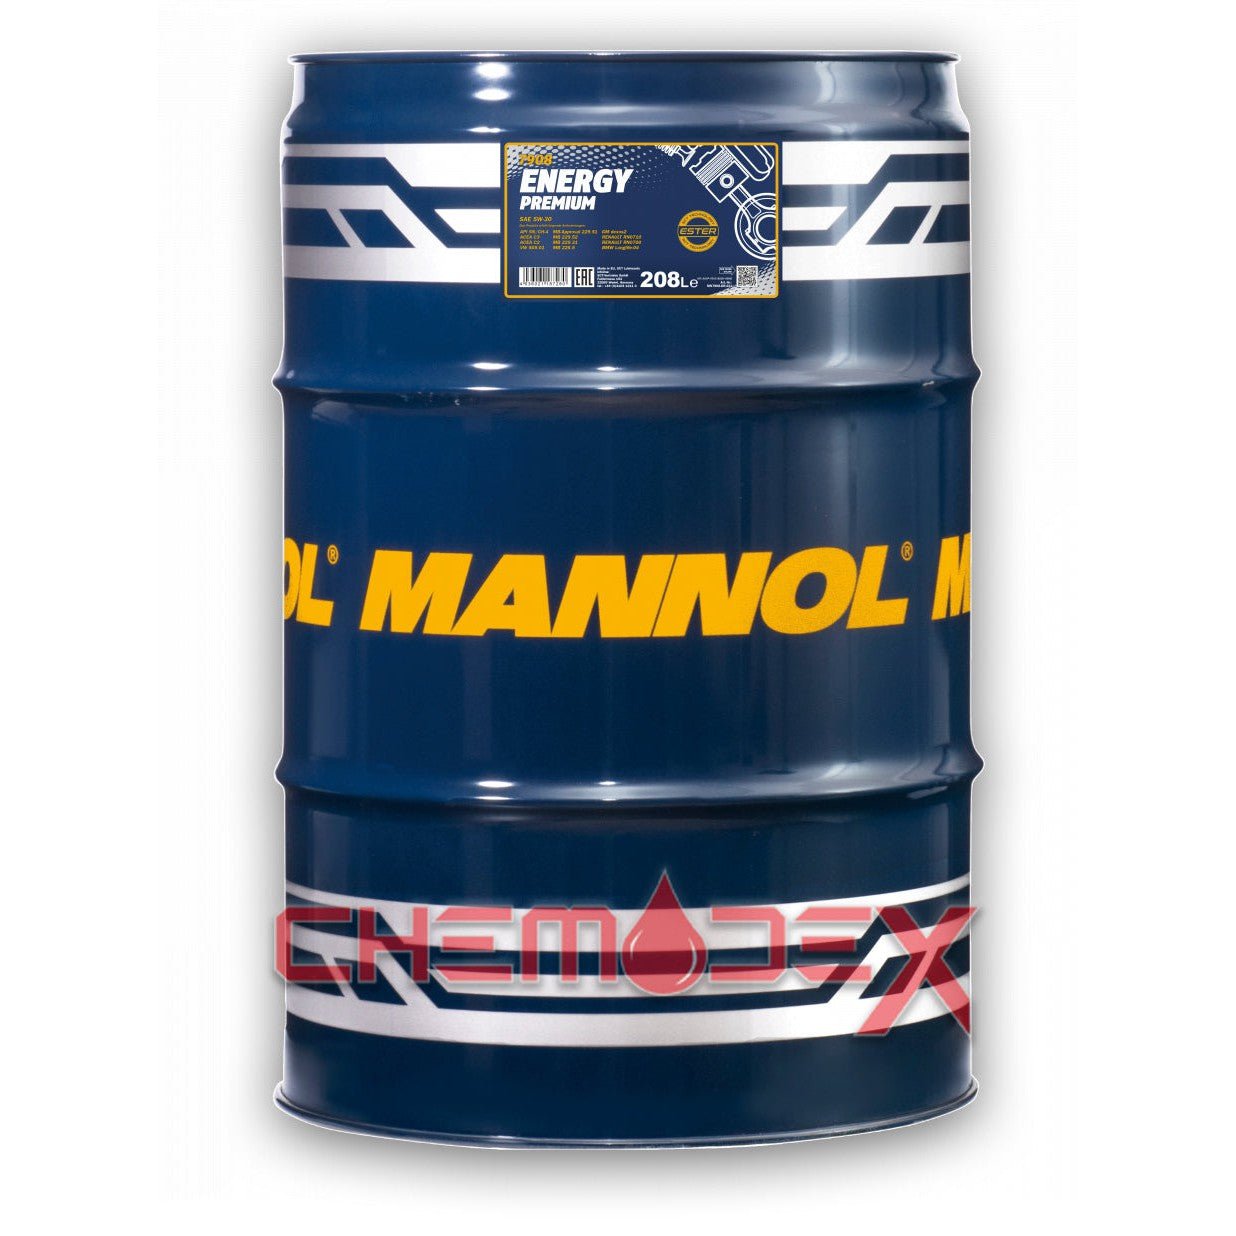 MANNOL Energy Premium C2/C3 SAE 5W30 208L Fully Synthetic Premium